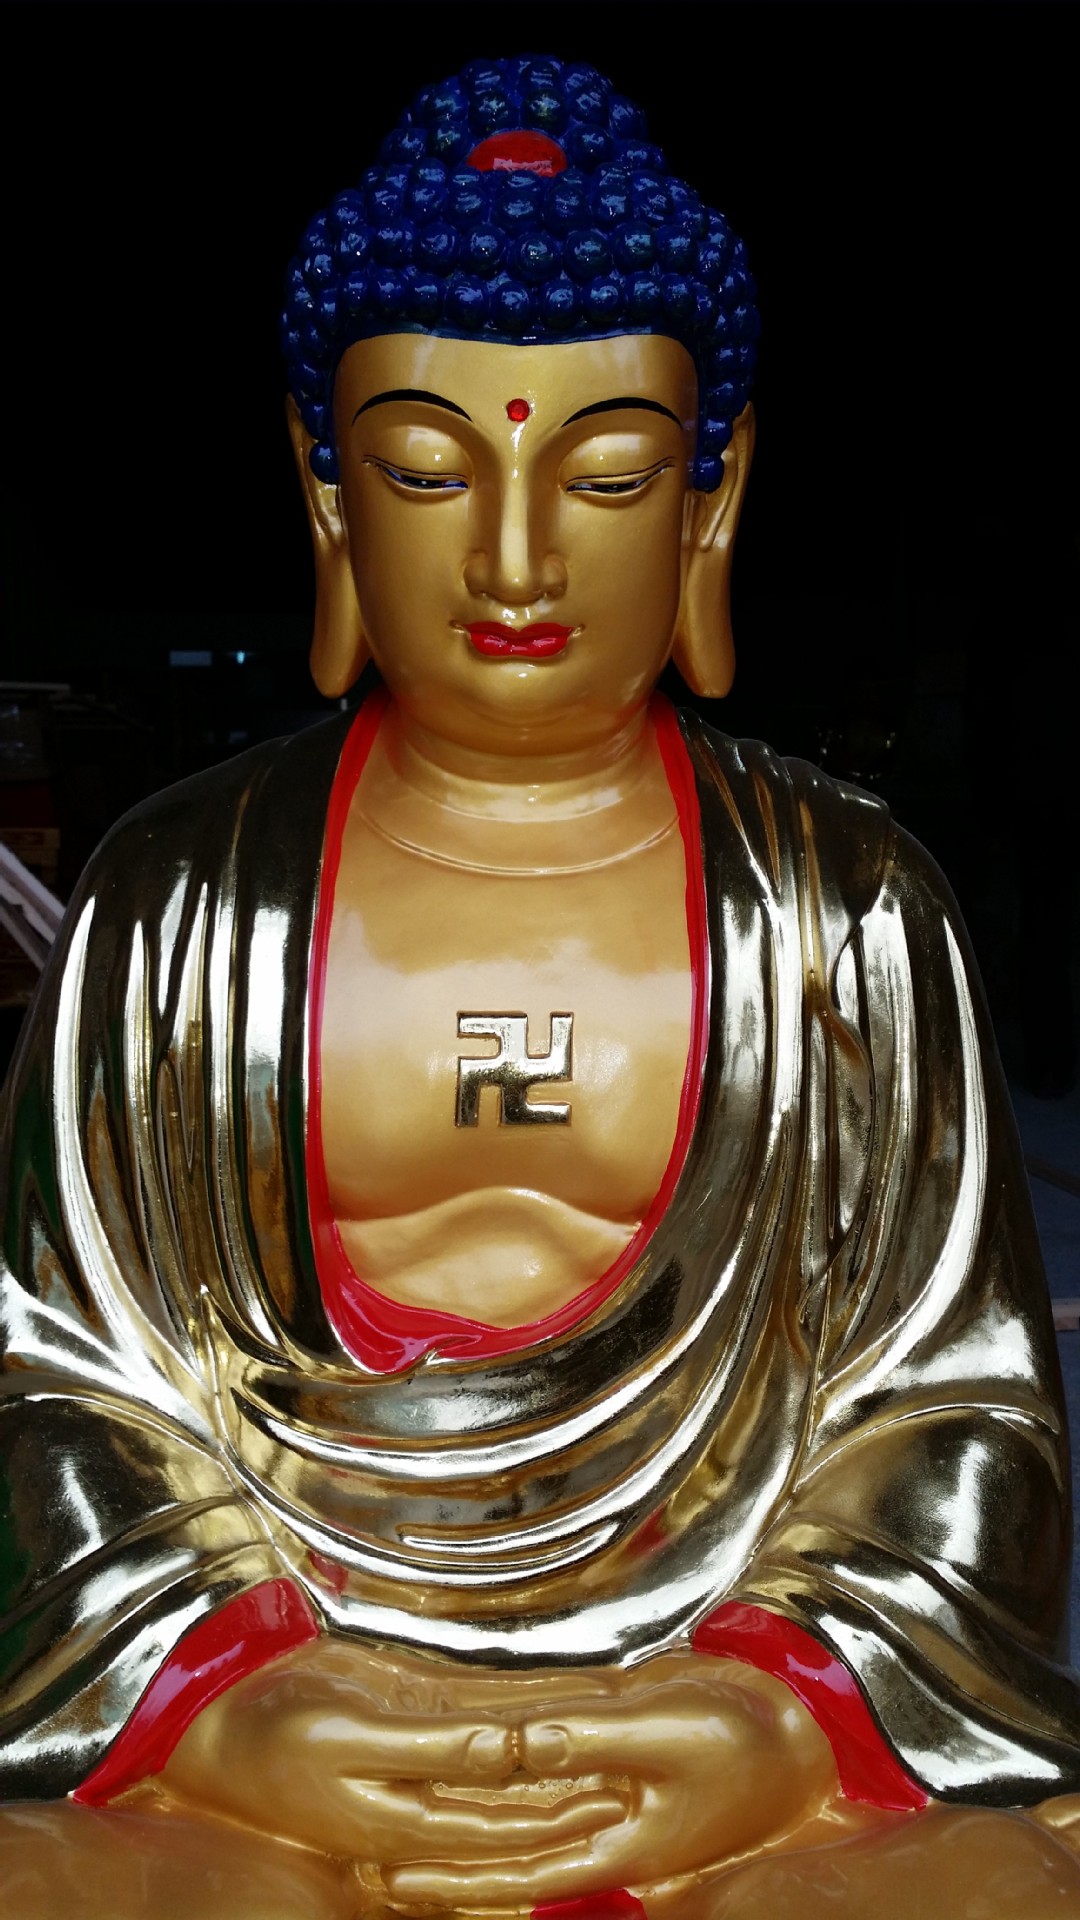 佛祖厂家直销 玻璃钢树脂佛像 贴金彩绘 释迦牟尼佛(108米)高